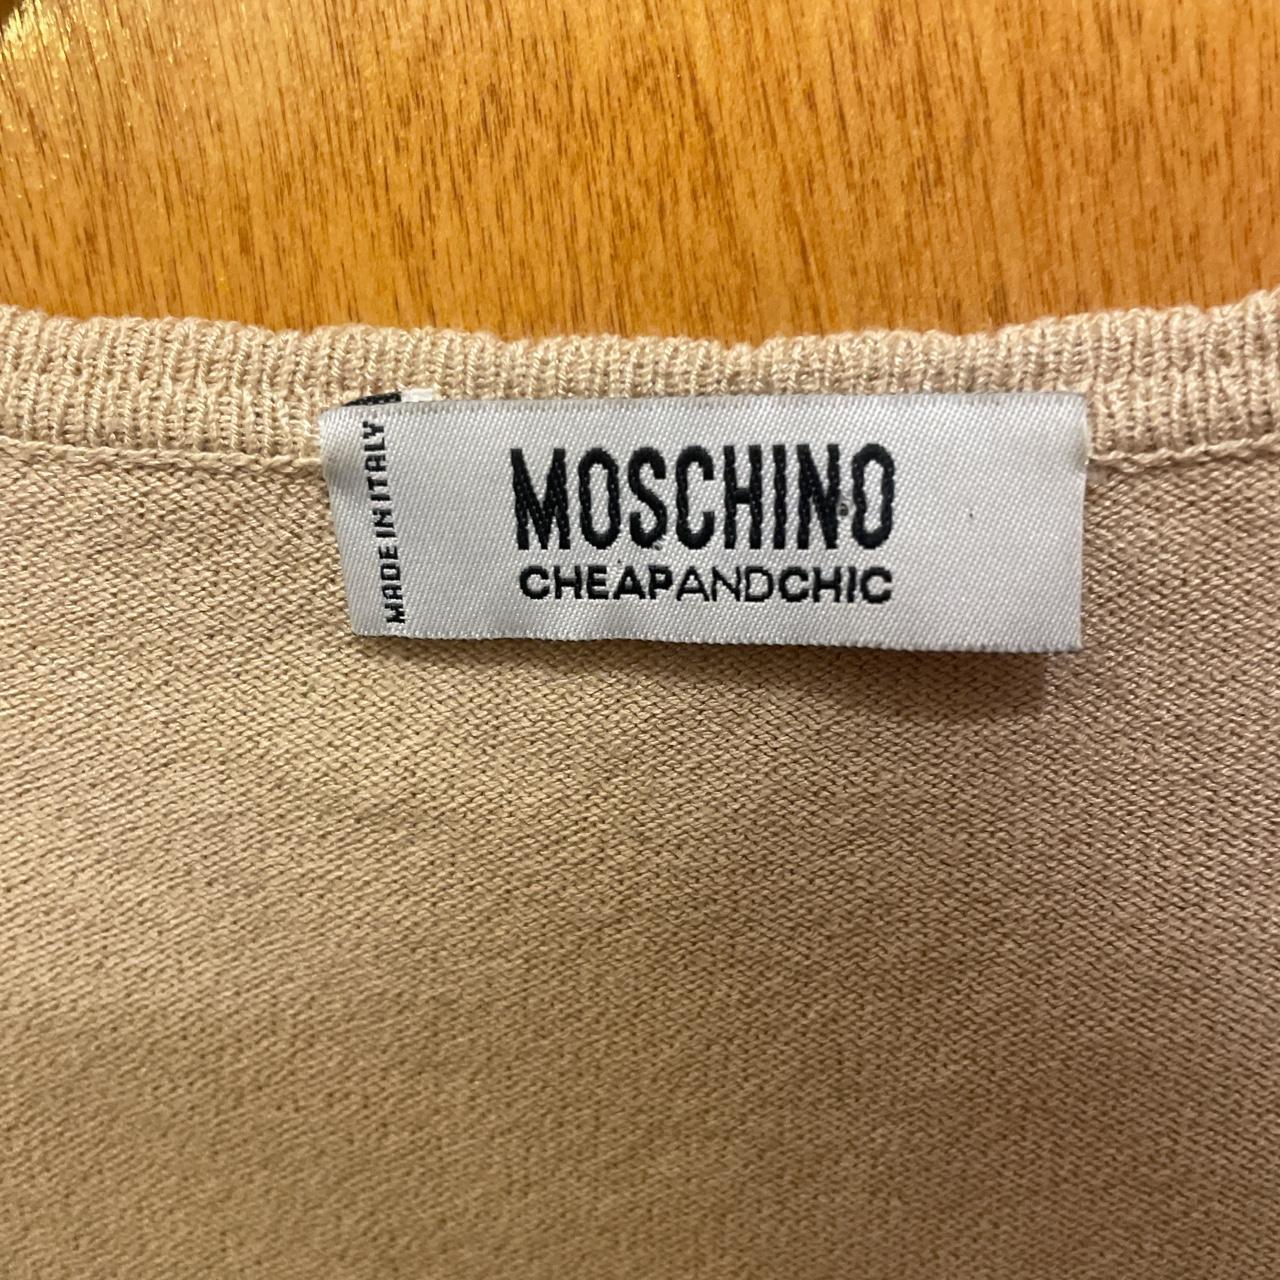 Moschino Cheap & Chic Women's Tan and Cream Shirt (3)